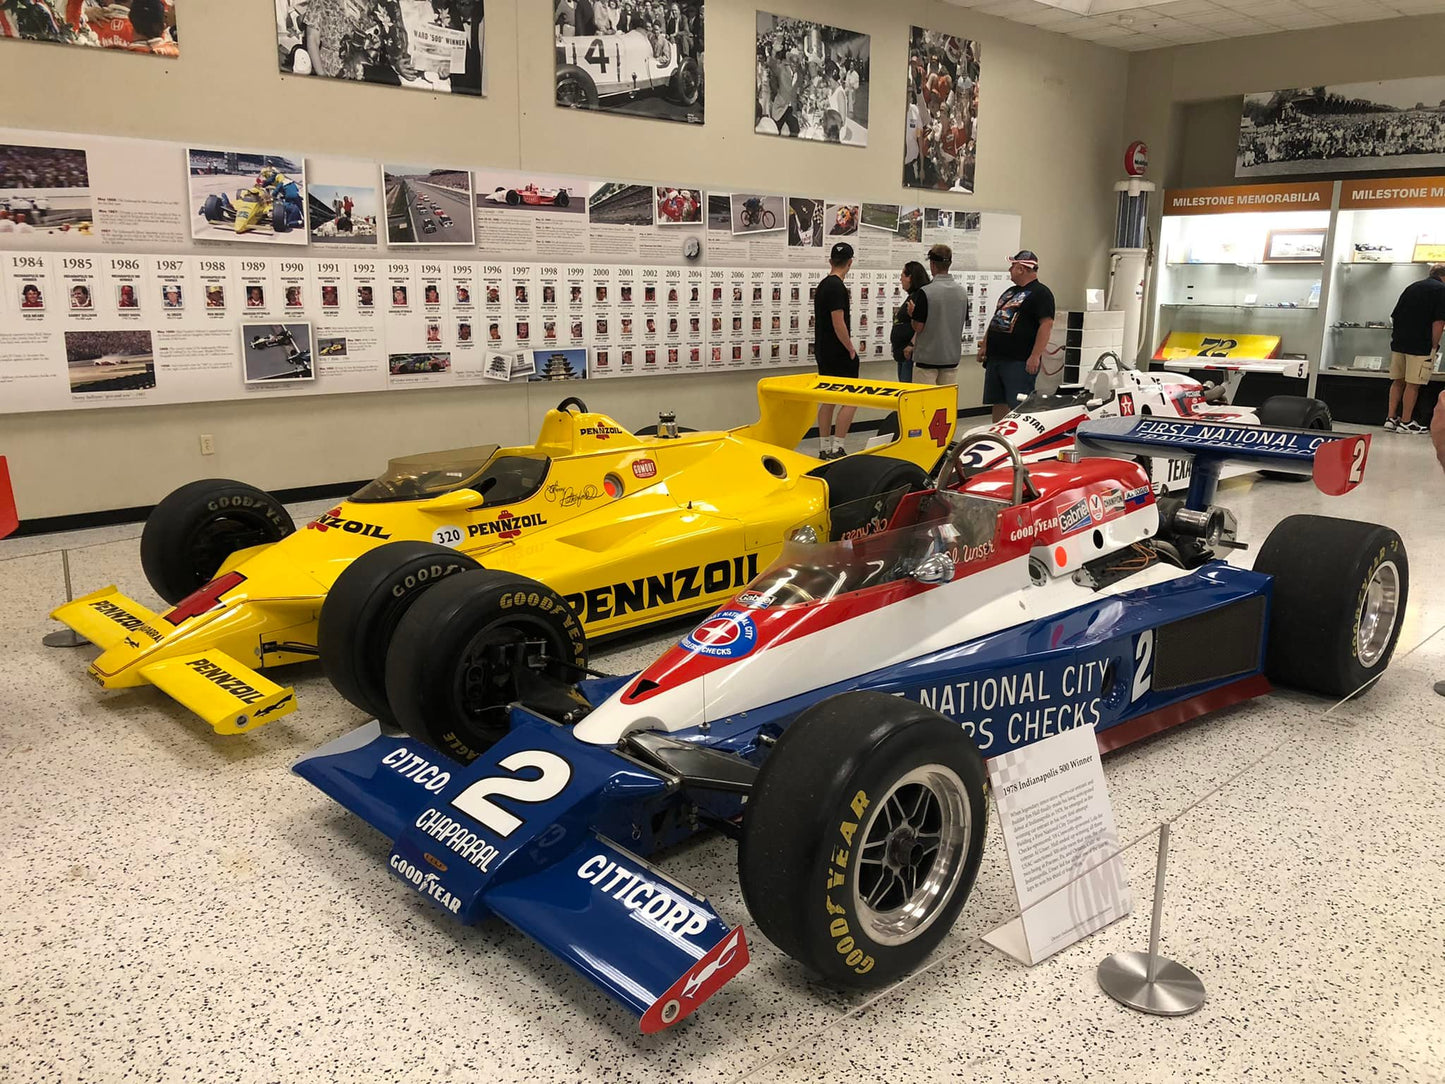 Indianapolis 500 Museum ! de superbes Indycar ayant fait la gloire de l'Indy 500